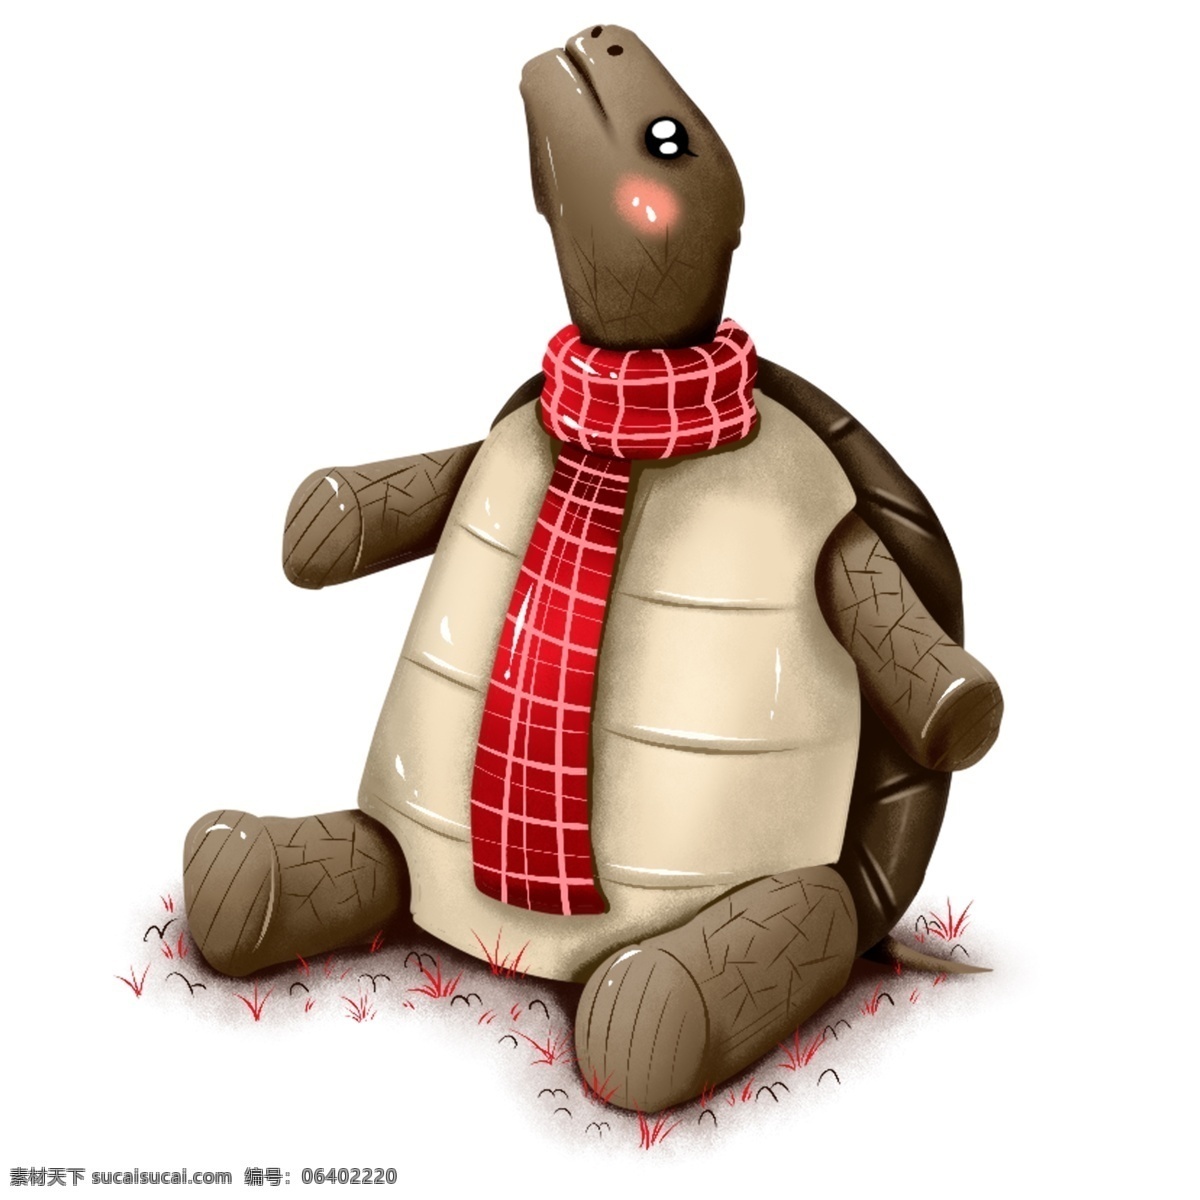 原创 手绘 动物 乌龟 冬季 冬日 围巾 爬行 类 元素 海报素材 商用 爬行类